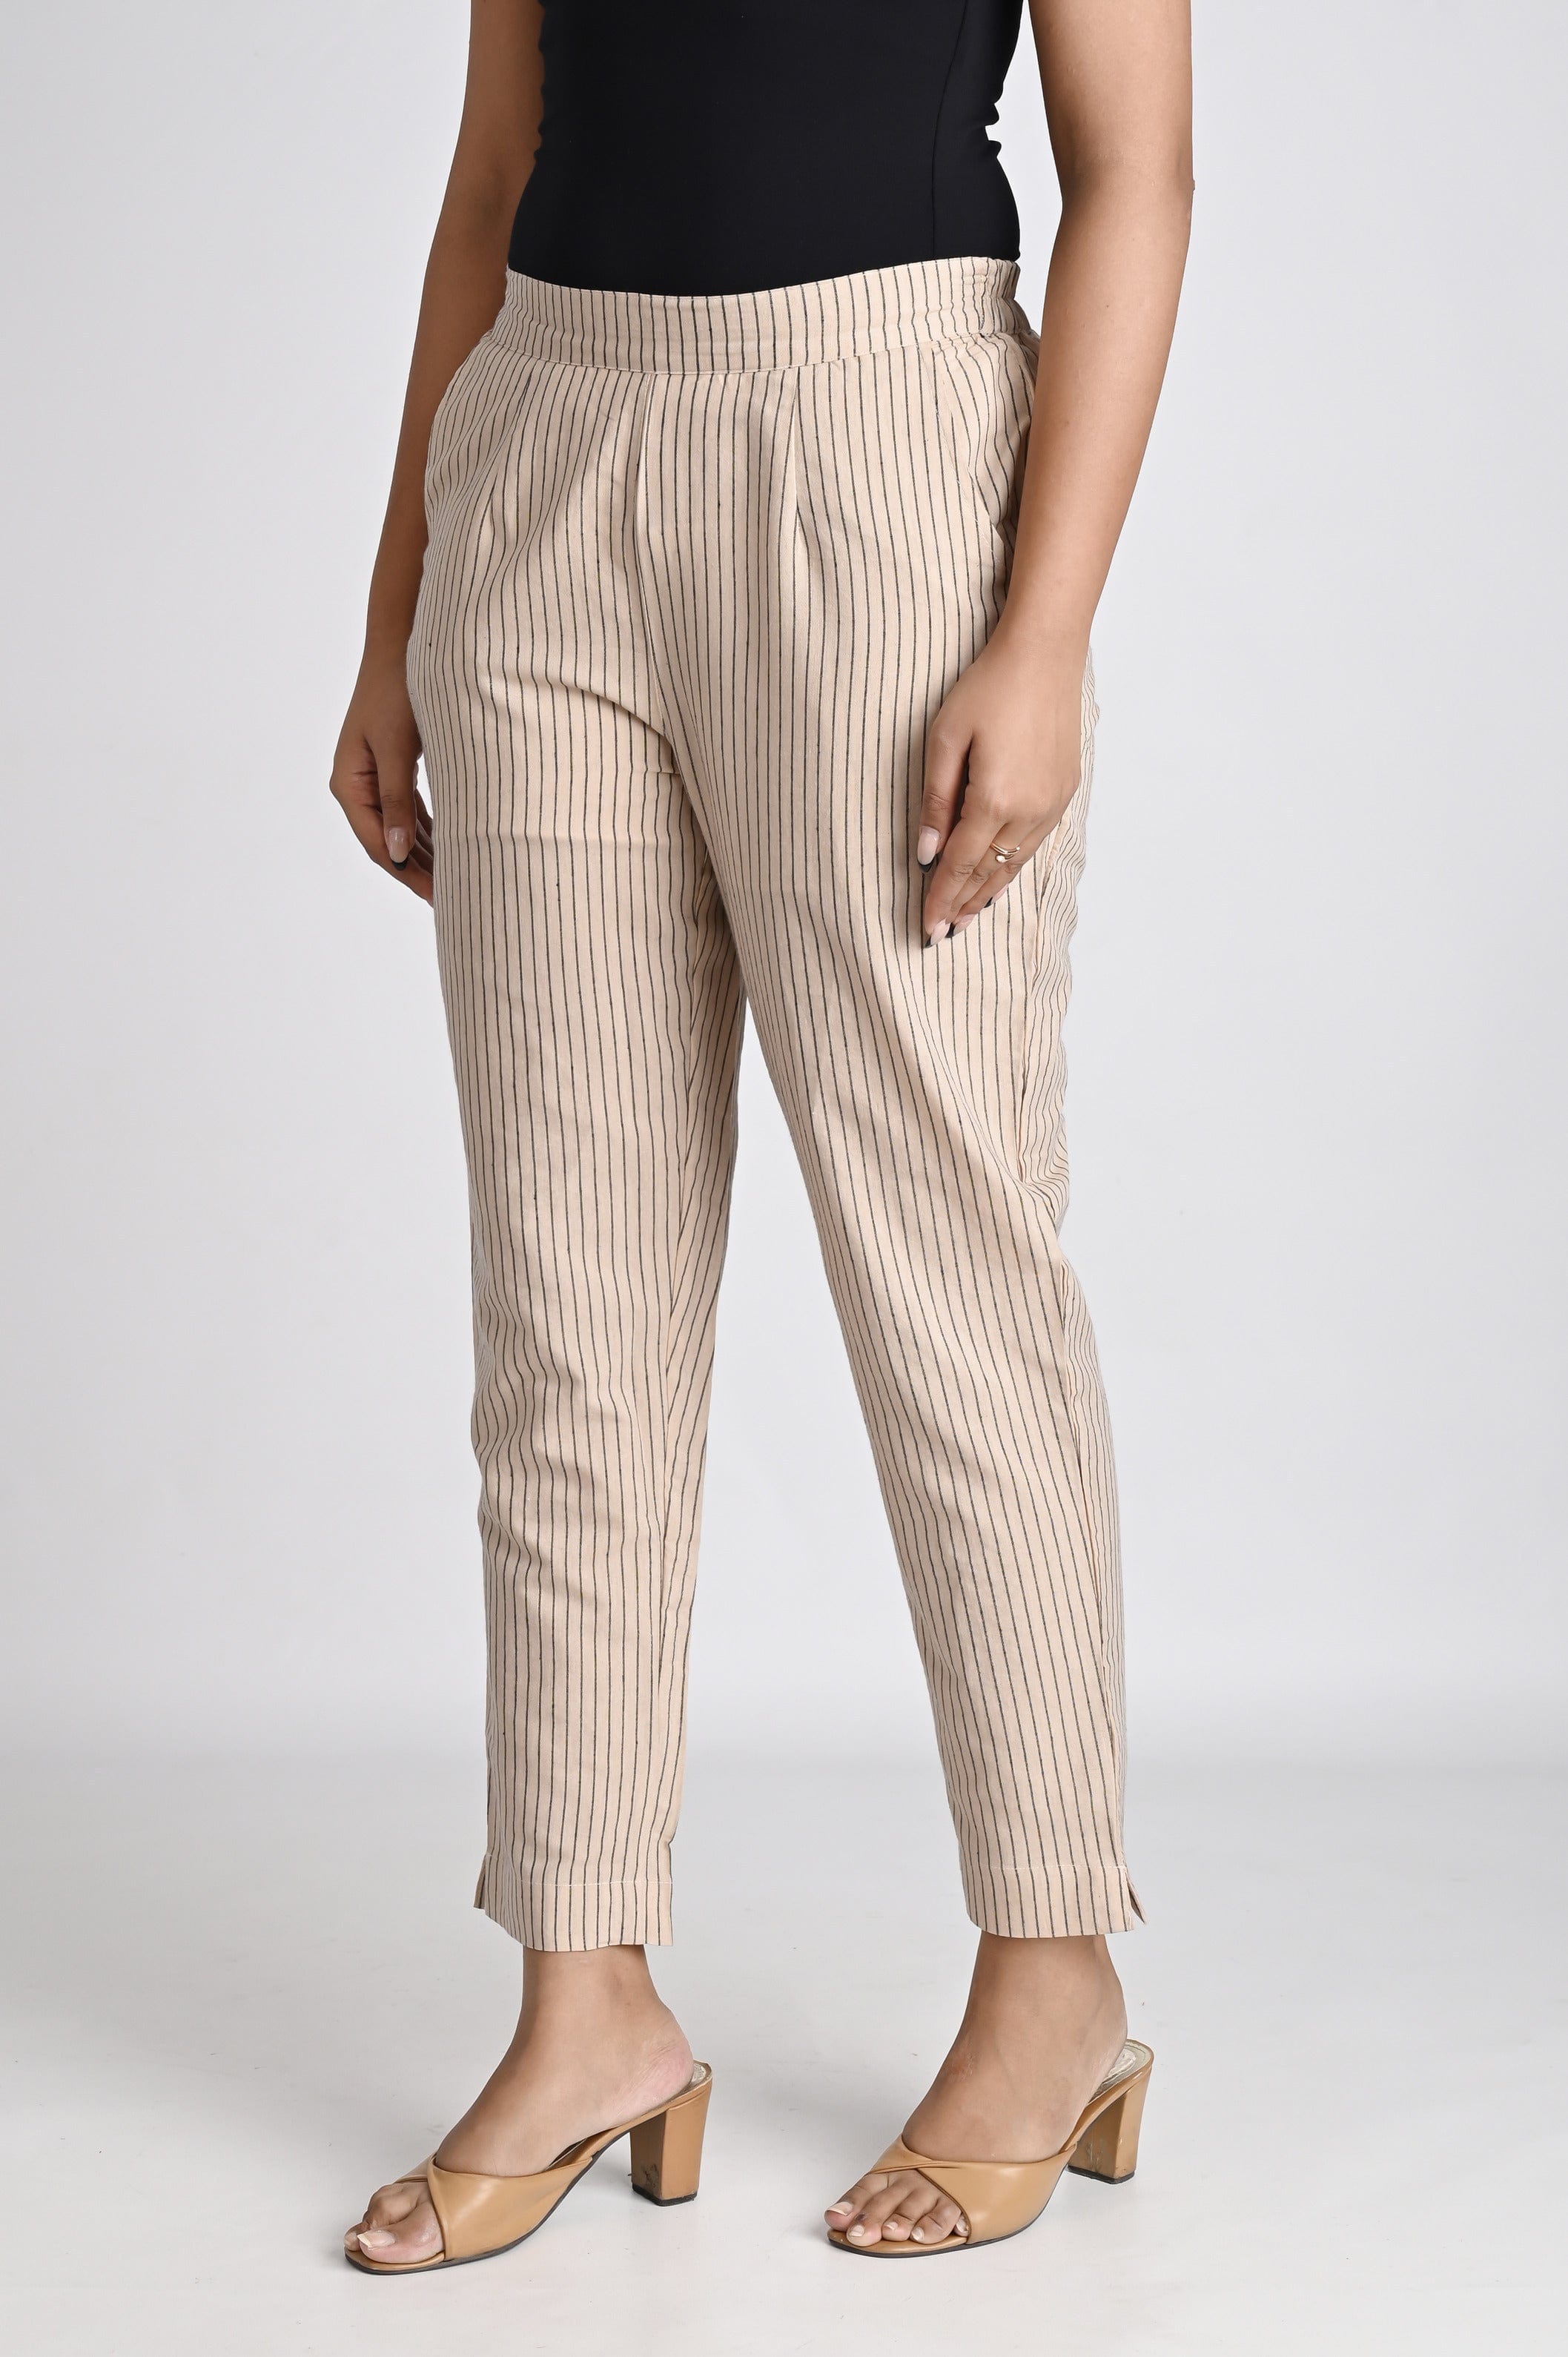 Brown Striped Cotton Pants